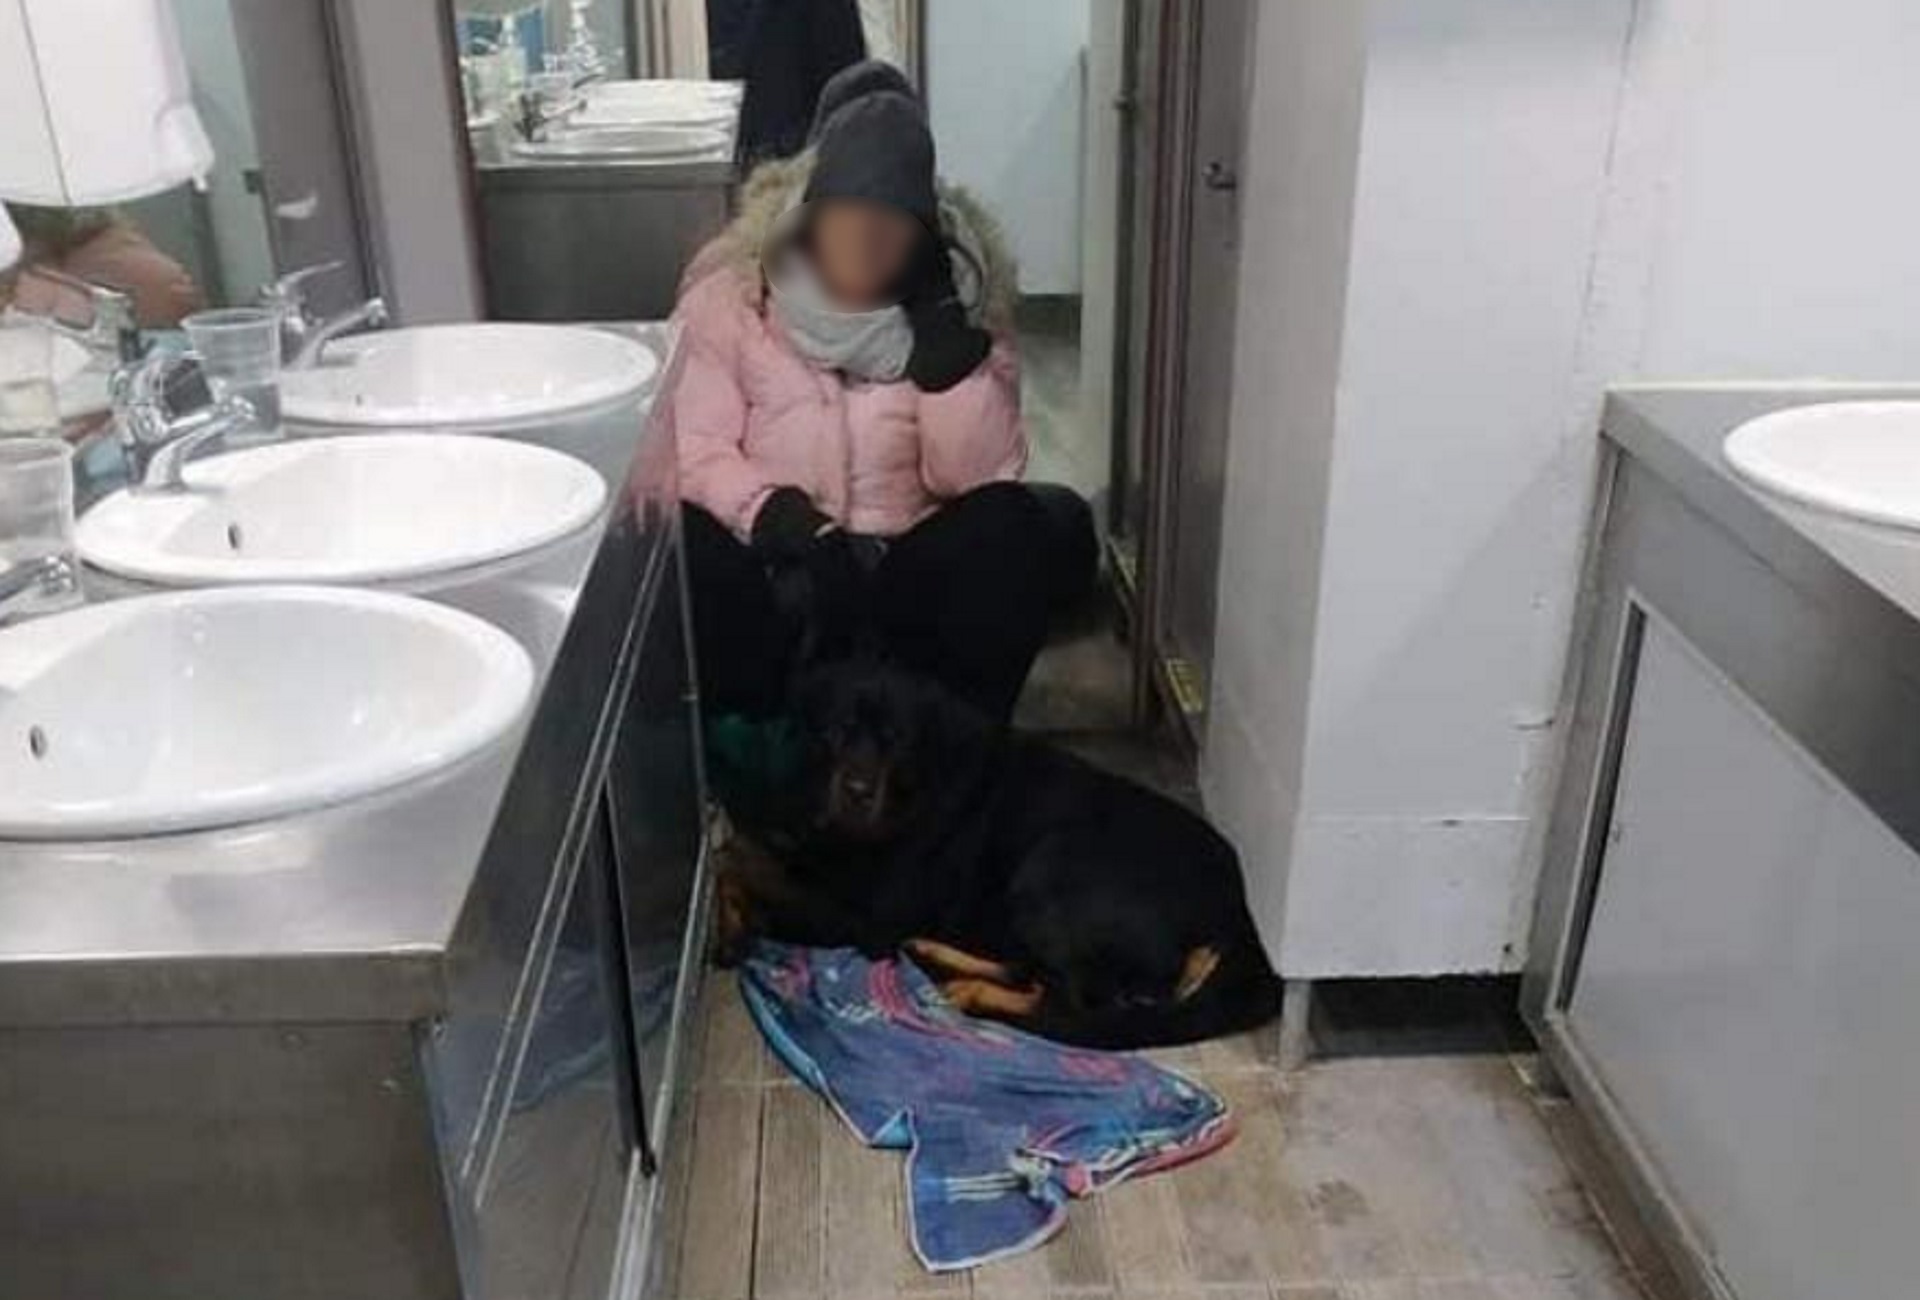 Σκόπελος: Αδιανόητες εικόνες σε πλοίο με αυτή τη γυναίκα να παραμένει κλειδωμένη σε τουαλέτα για 5 ώρες